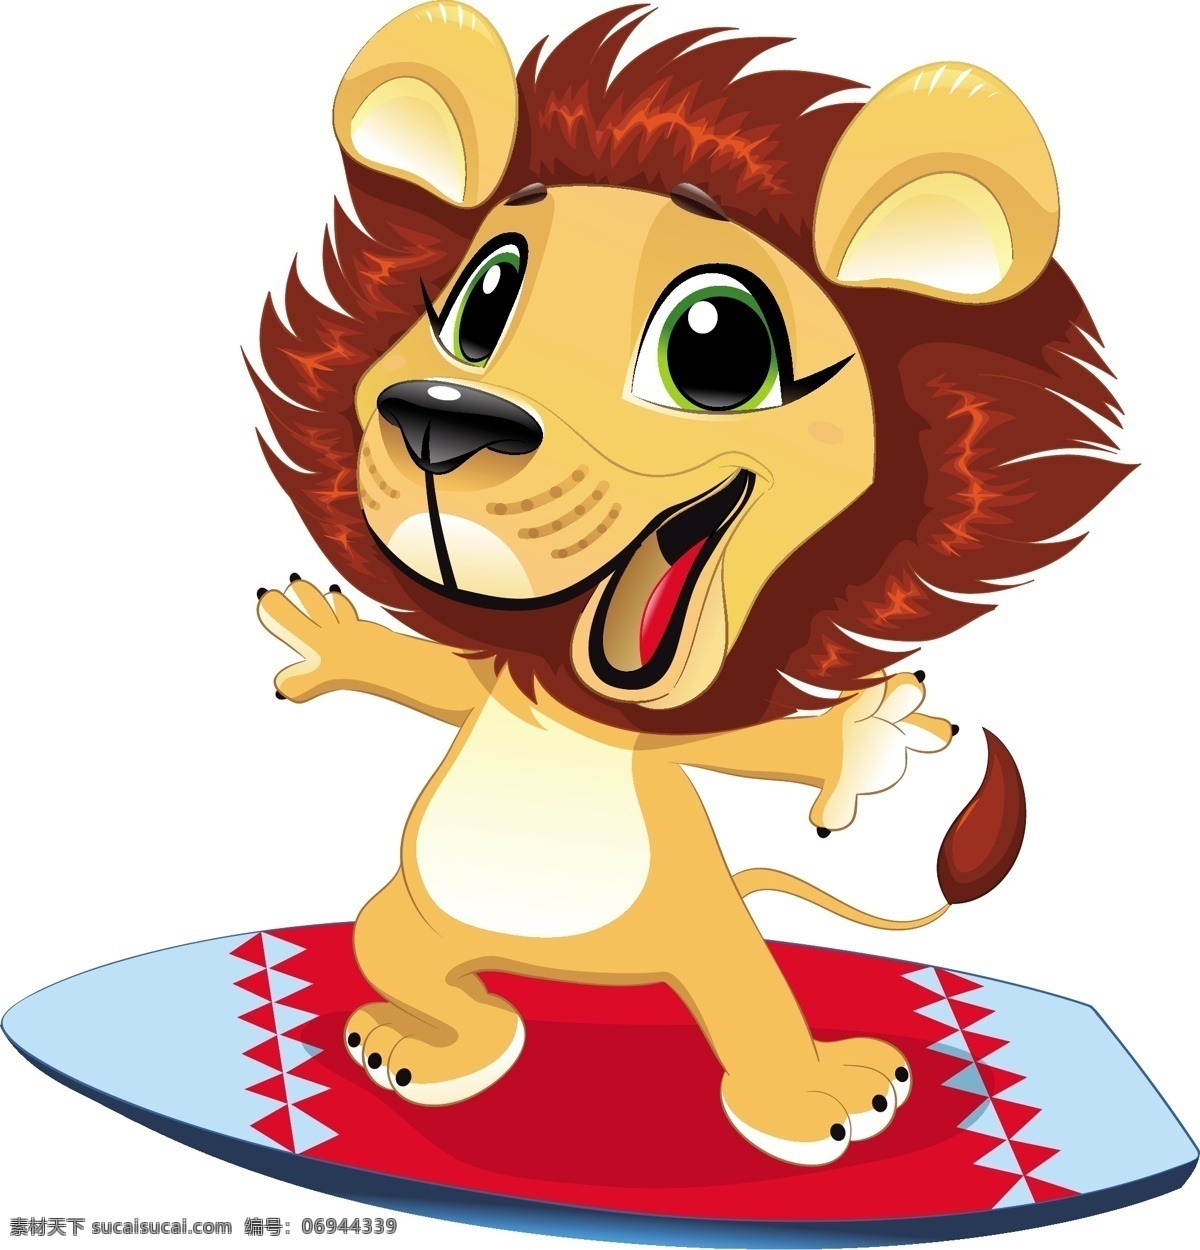 狮子 小狮子 狮子王 卡通狮子 卡通小狮子 可爱 卡通形象 卡通装饰 卡通 矢量 抽象设计 手绘 创意 时尚 可爱卡通 儿童素材 幼儿园素材 广告创意 卡通设计